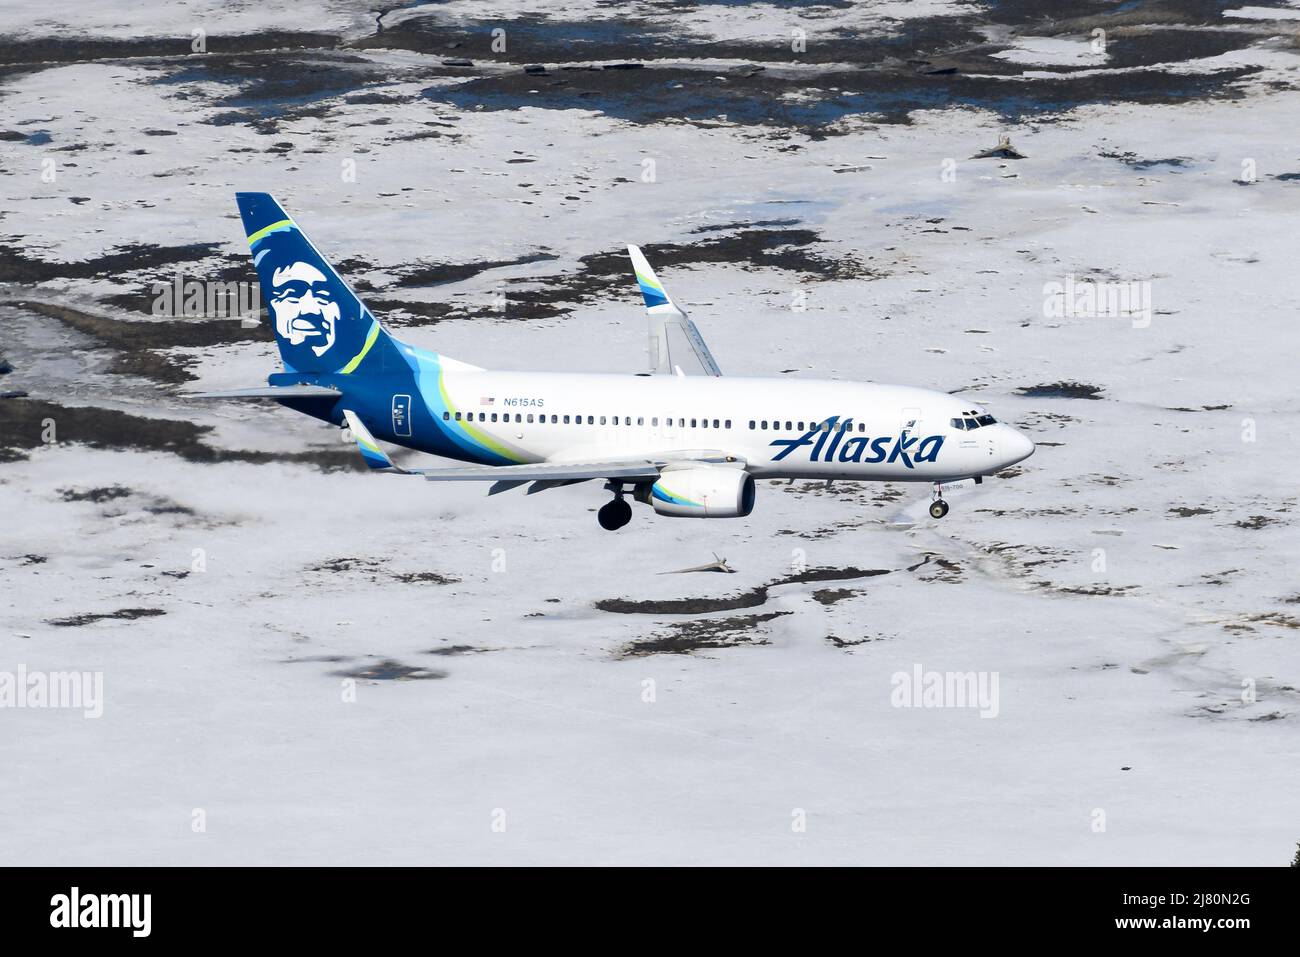 Alaska Airlines Boeing 737-Flugzeug, das in Alaska über Schnee fliegt. Flugzeug, das von oben ankommt. Alaska Airlines 737-700 Flugzeug. Stockfoto